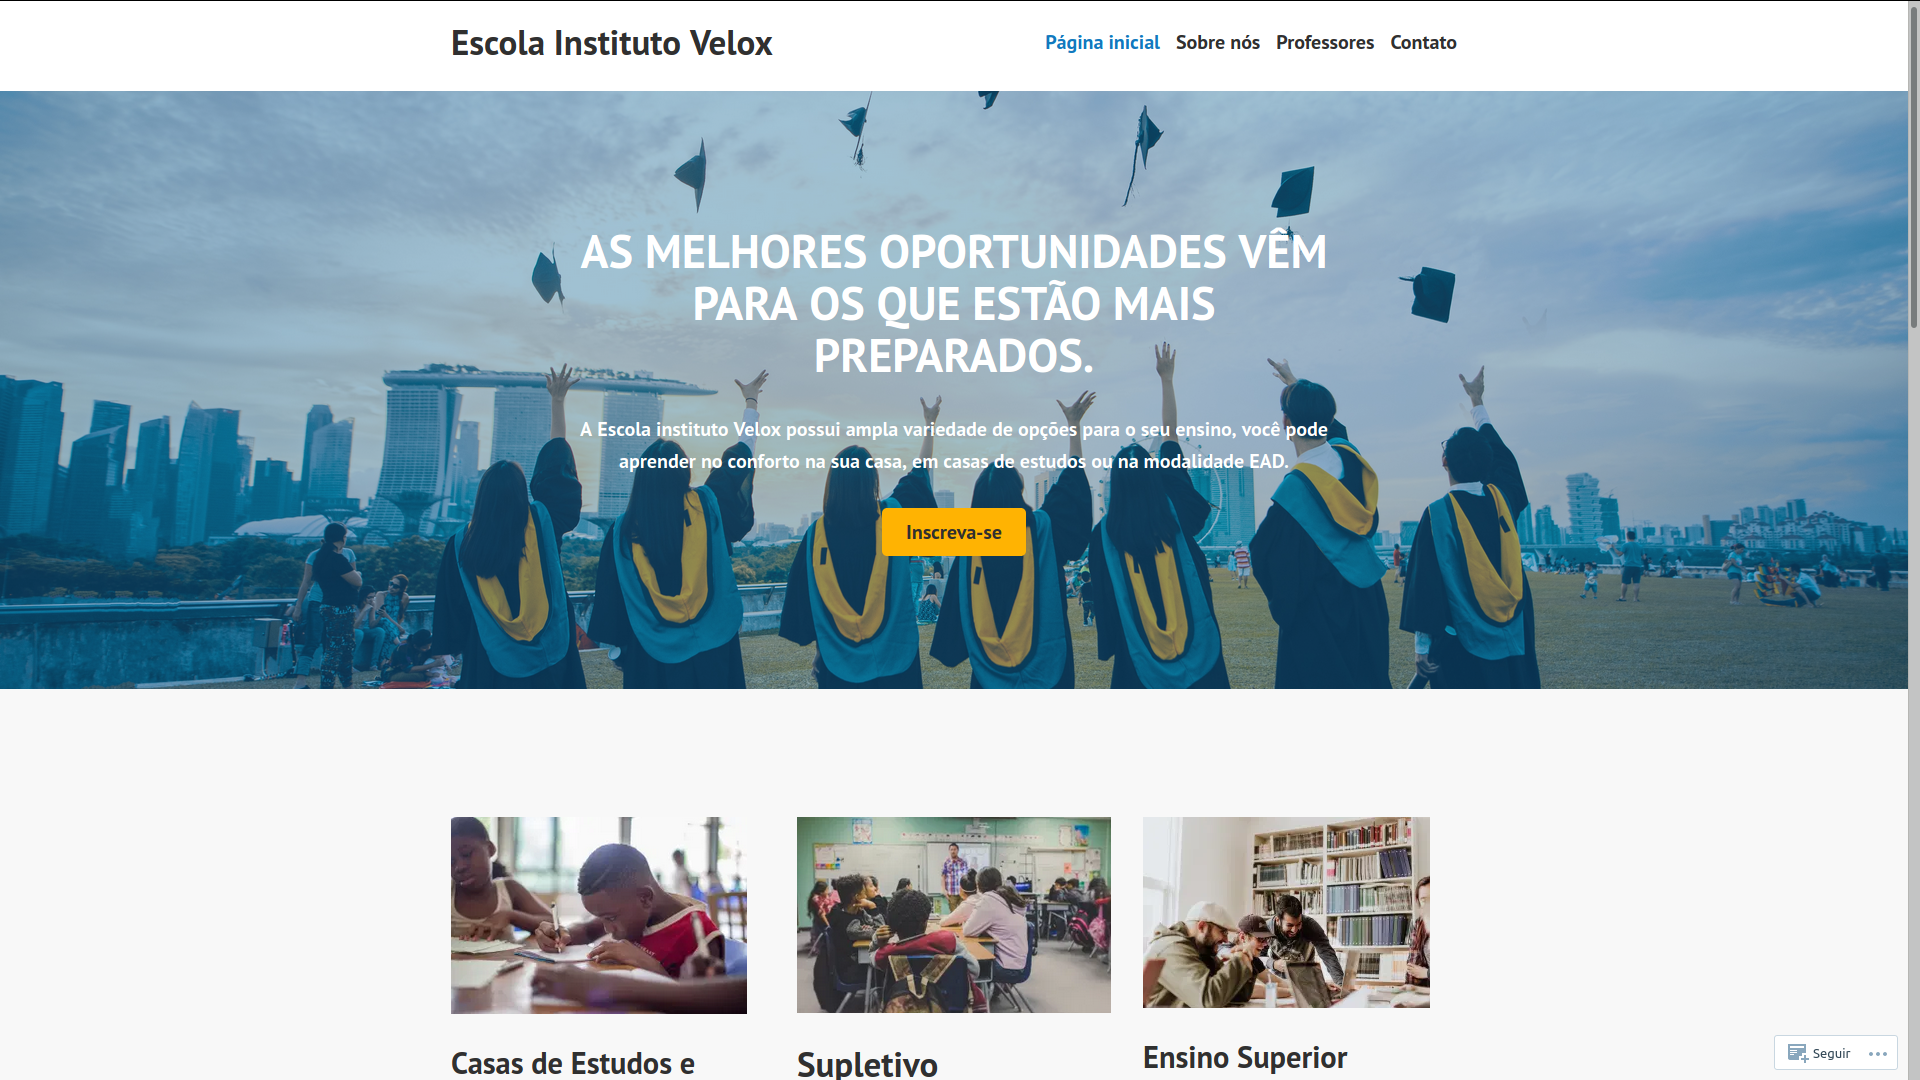 Capa do site Escola Instituto Velox